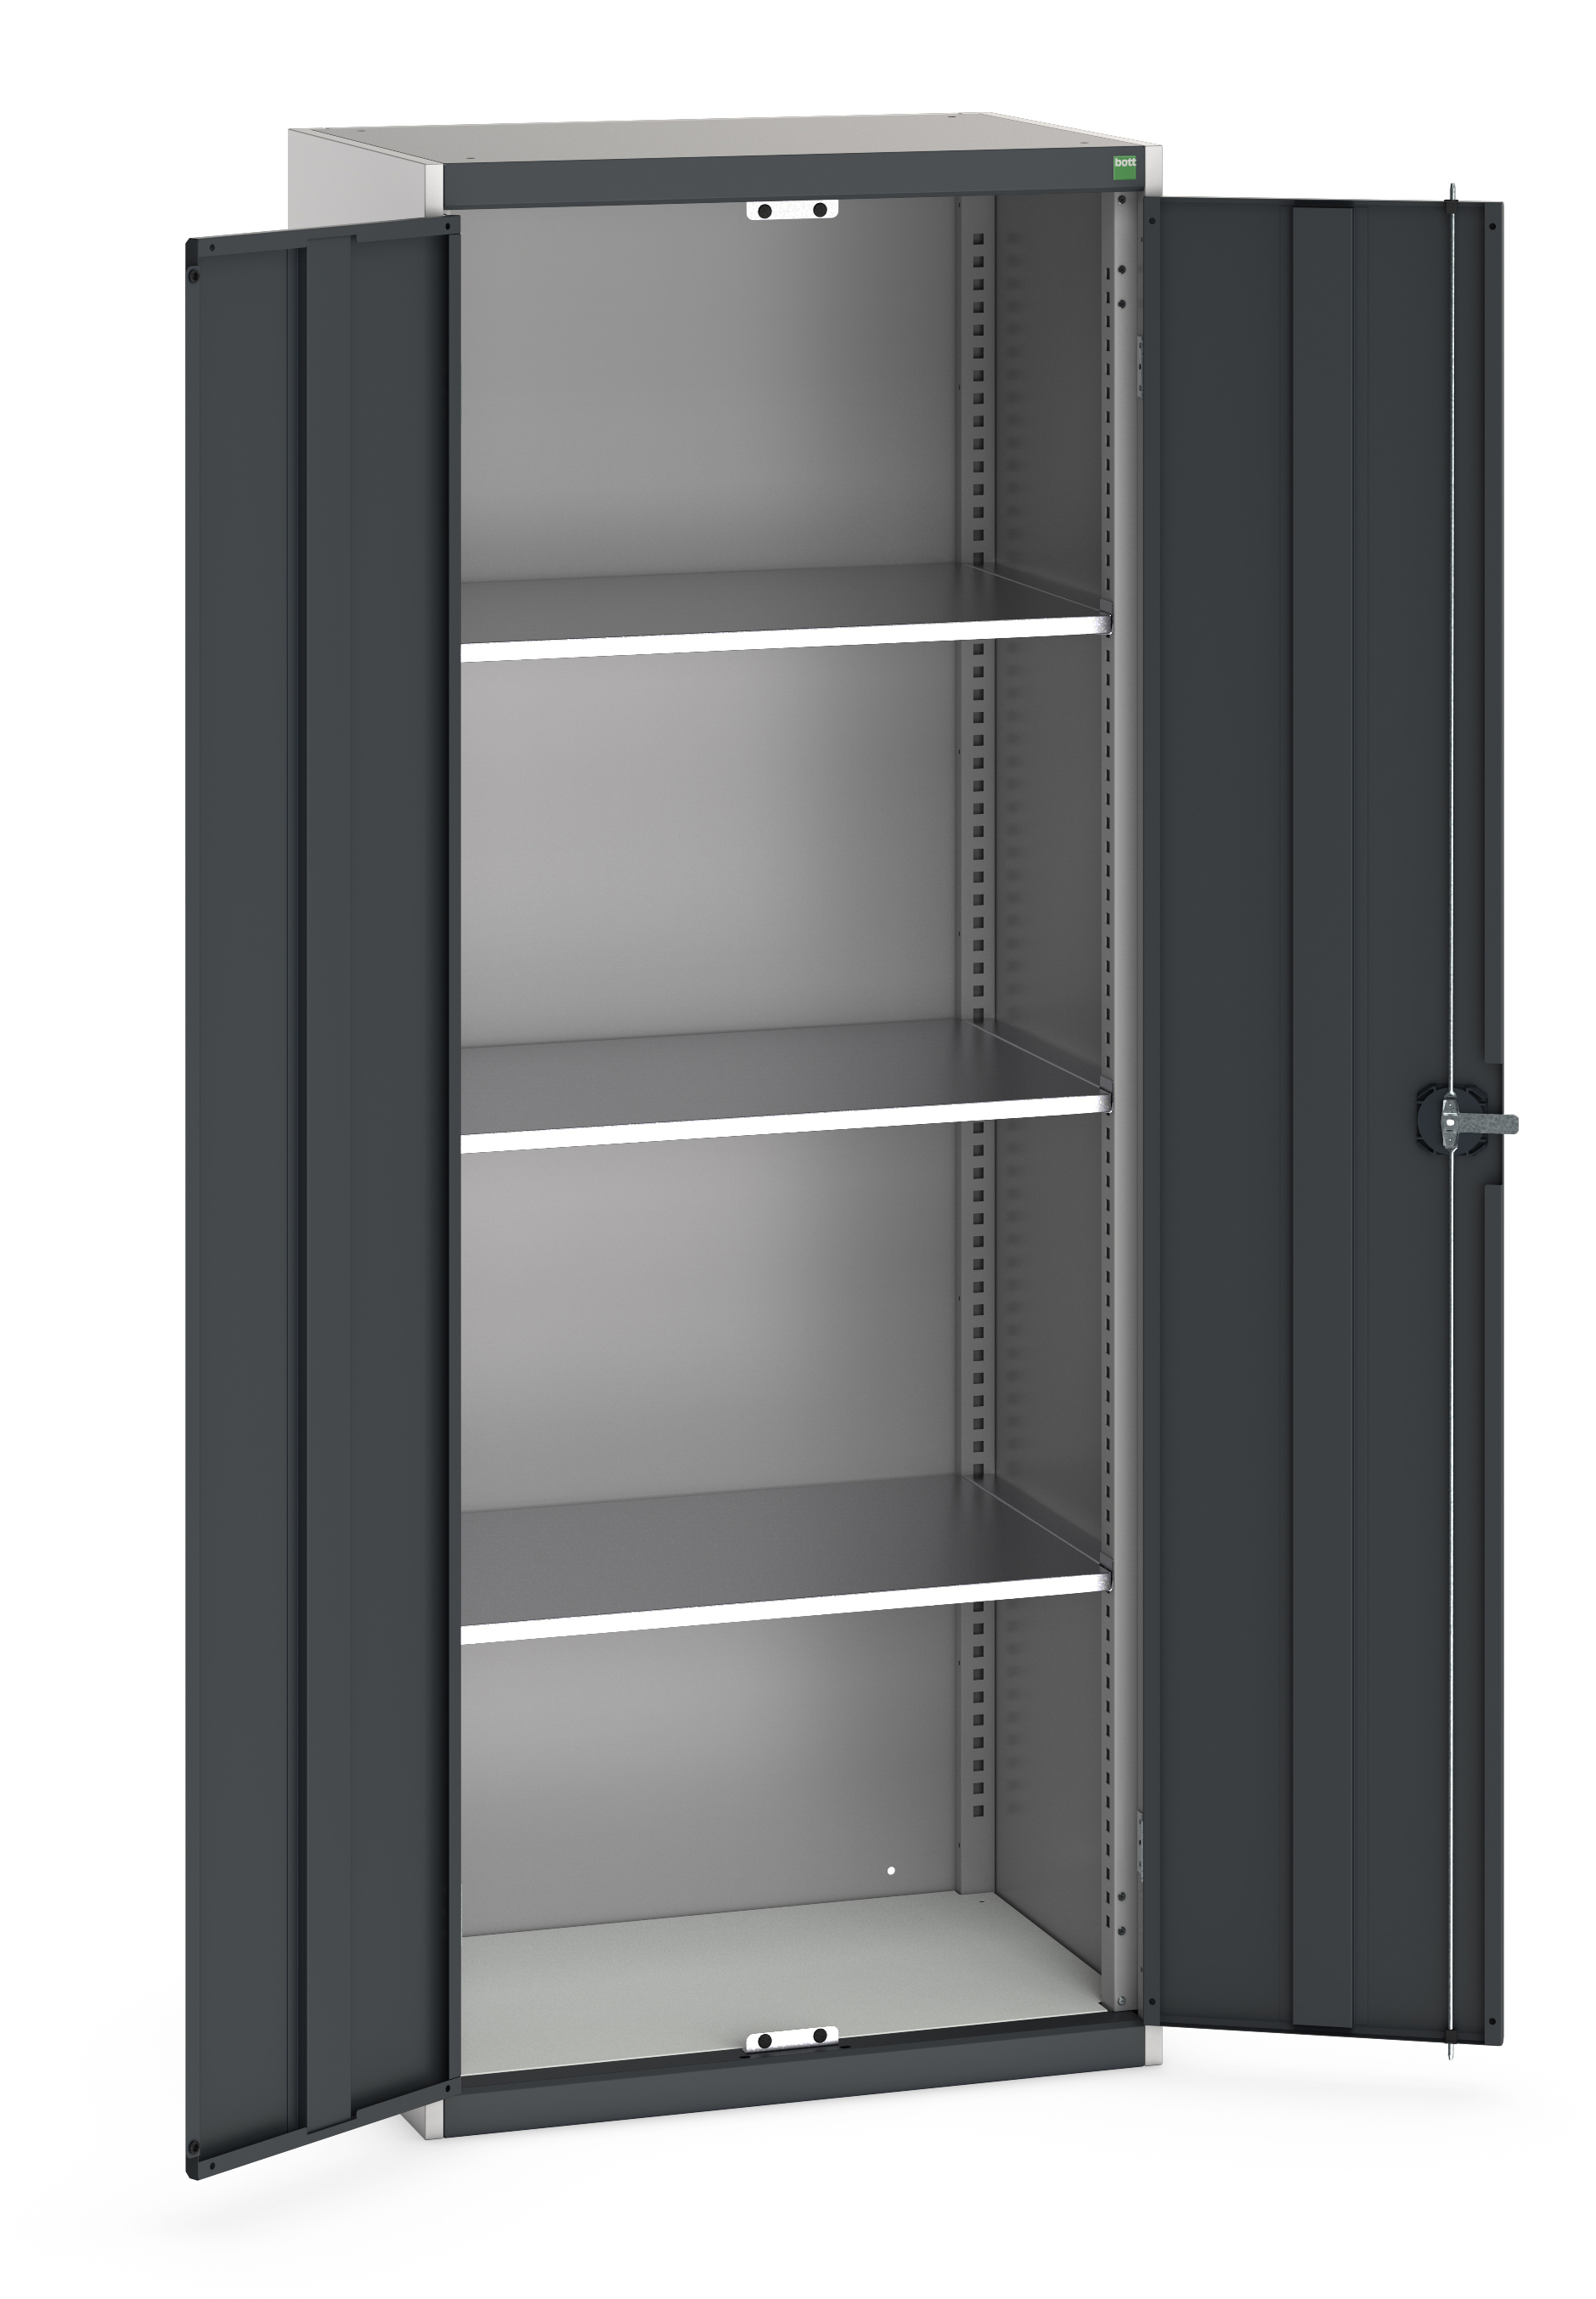 Bott Cubio Standard Duty Shelf Cupboard - 40031024.19V